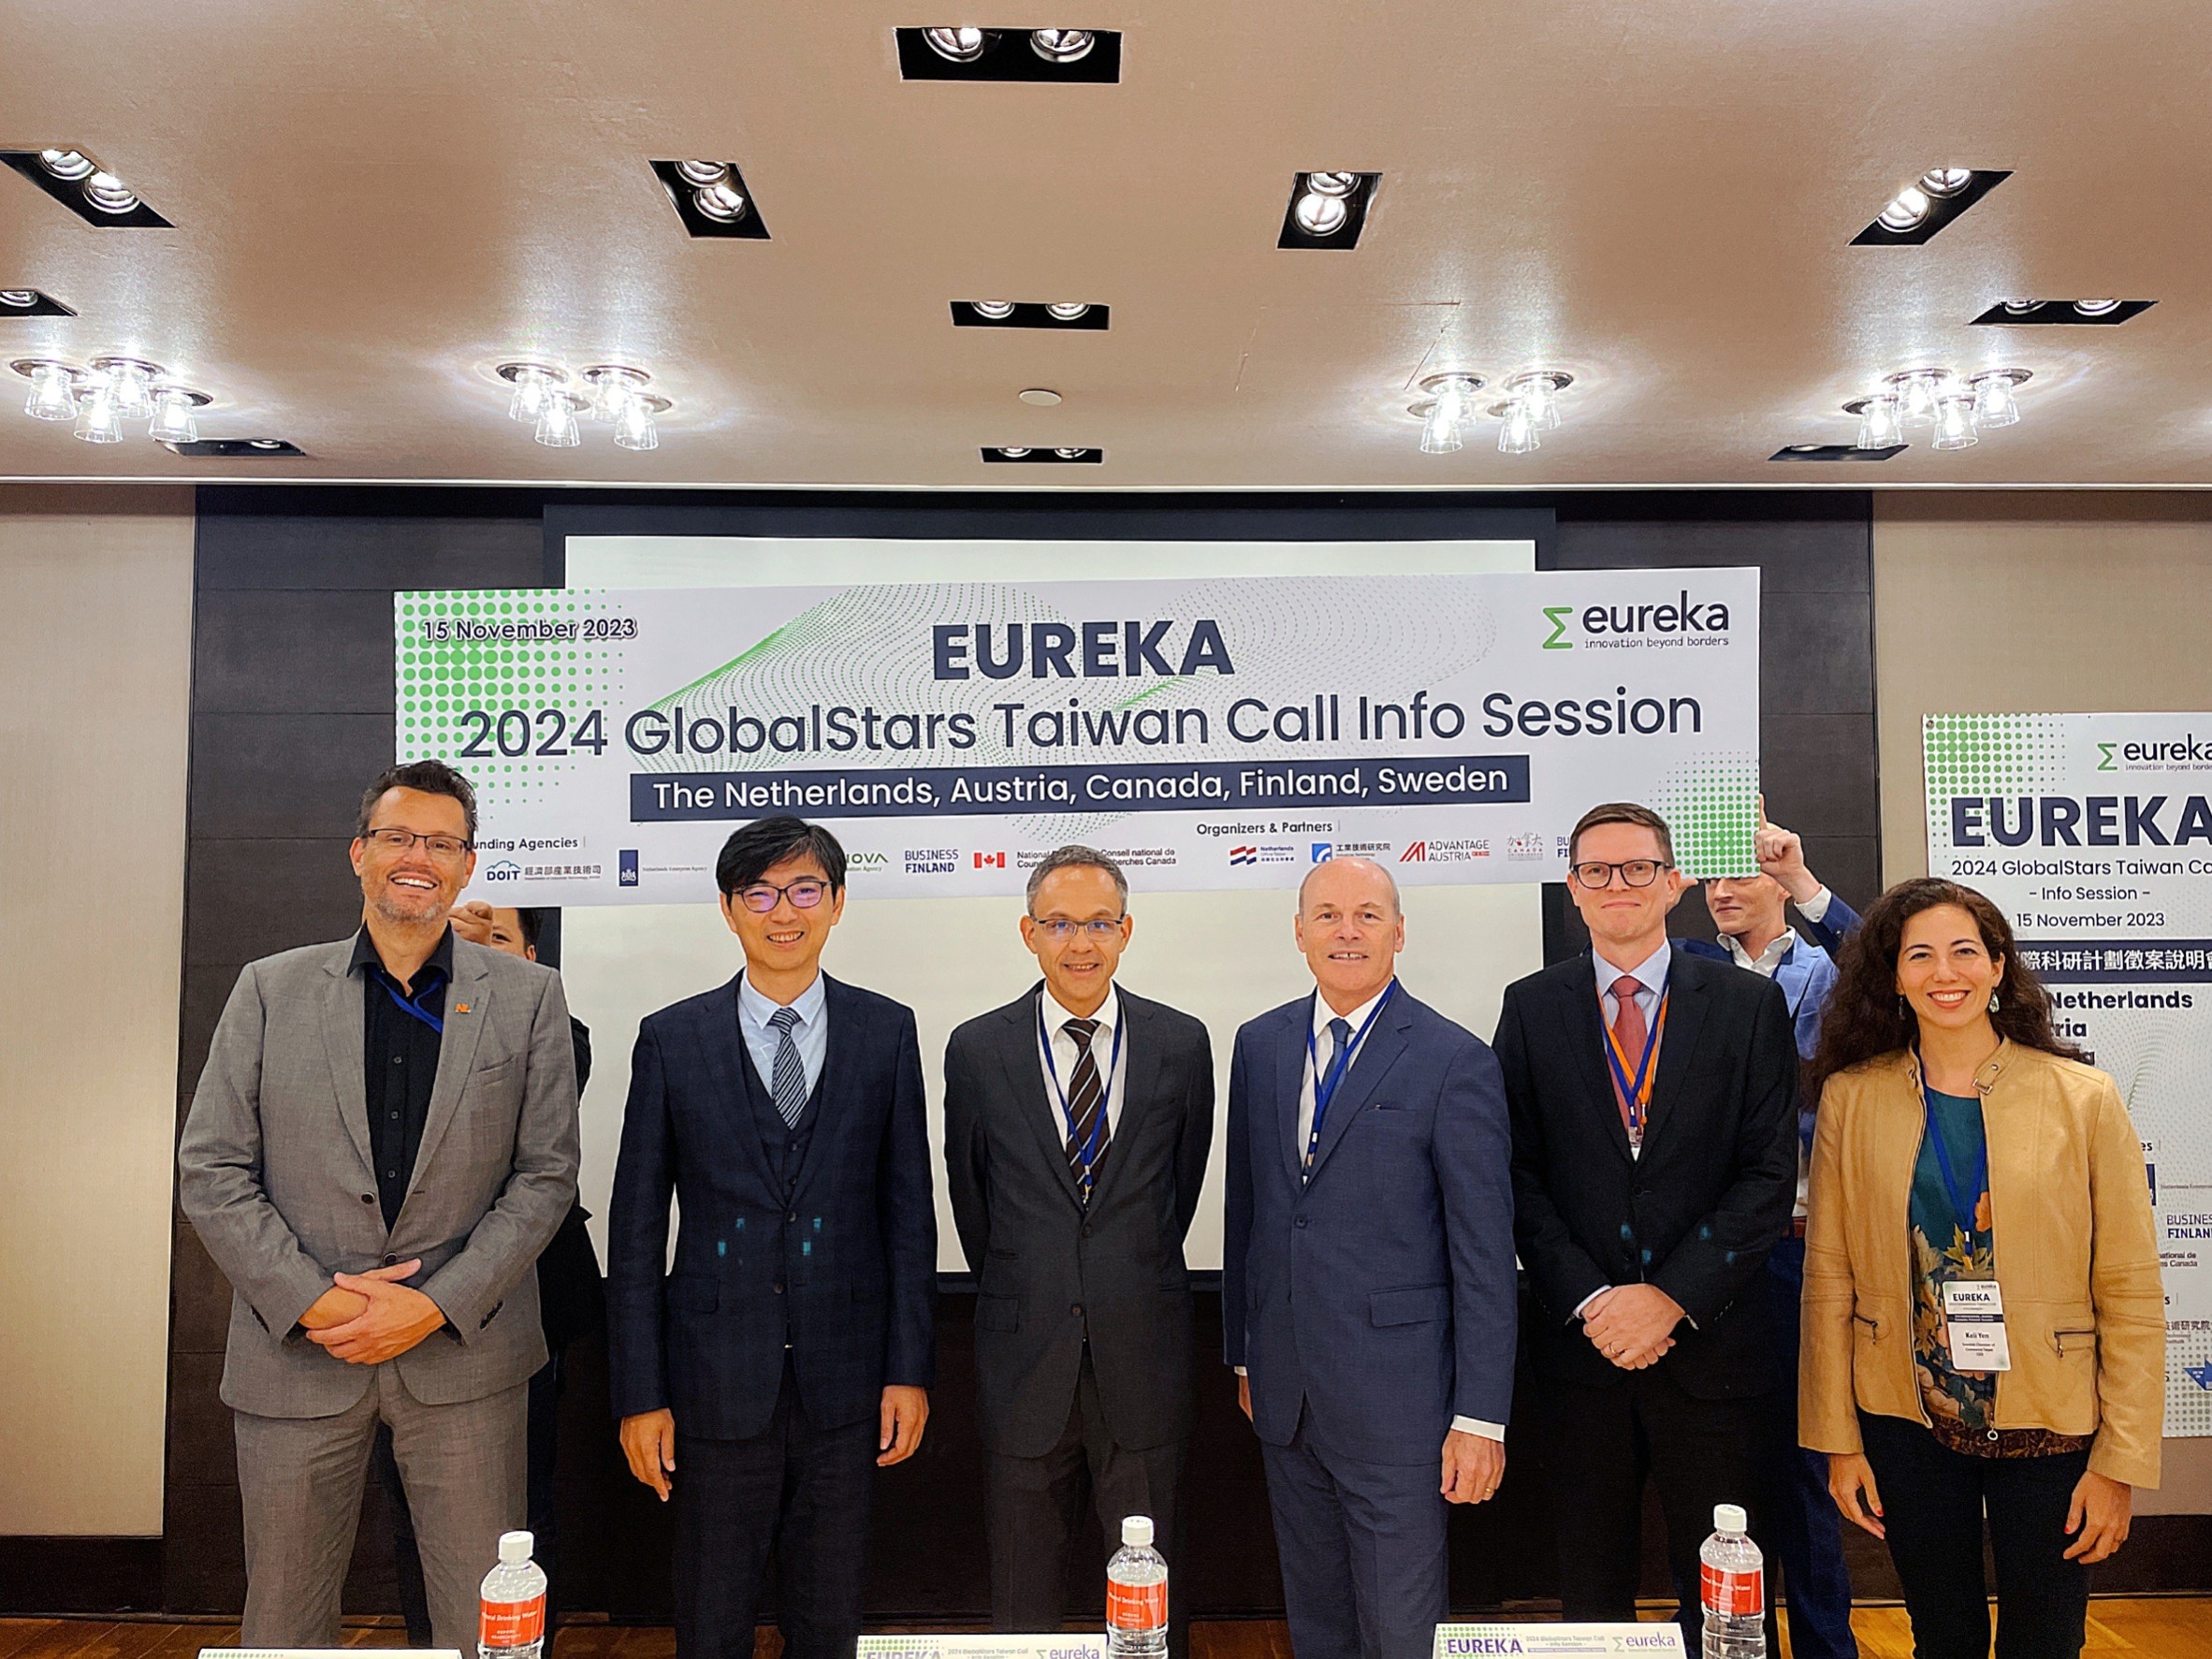 全球最大跨國科研組織EUREKA啟動臺灣研發合作計畫 荷奧芬瑞加五國宣布參與 創下歷年國家數新高紀錄